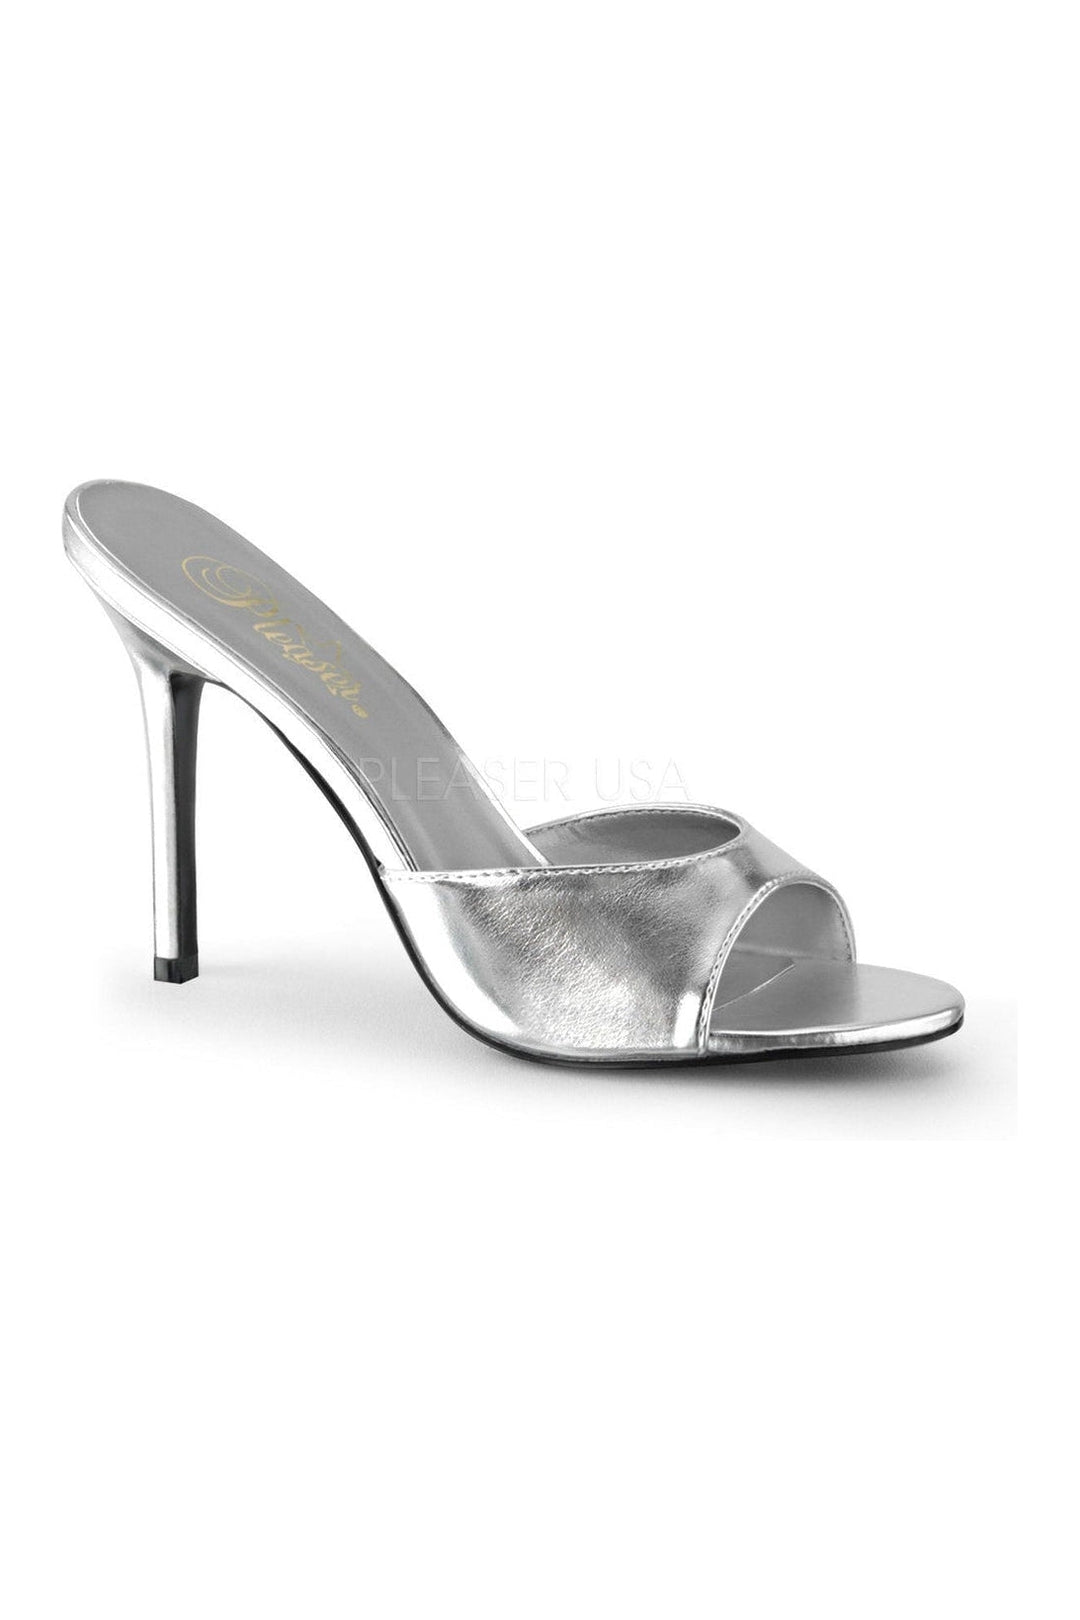 CLASSIQUE-01 Slide | Silver Faux Leather-Pleaser-Silver-Slides-SEXYSHOES.COM